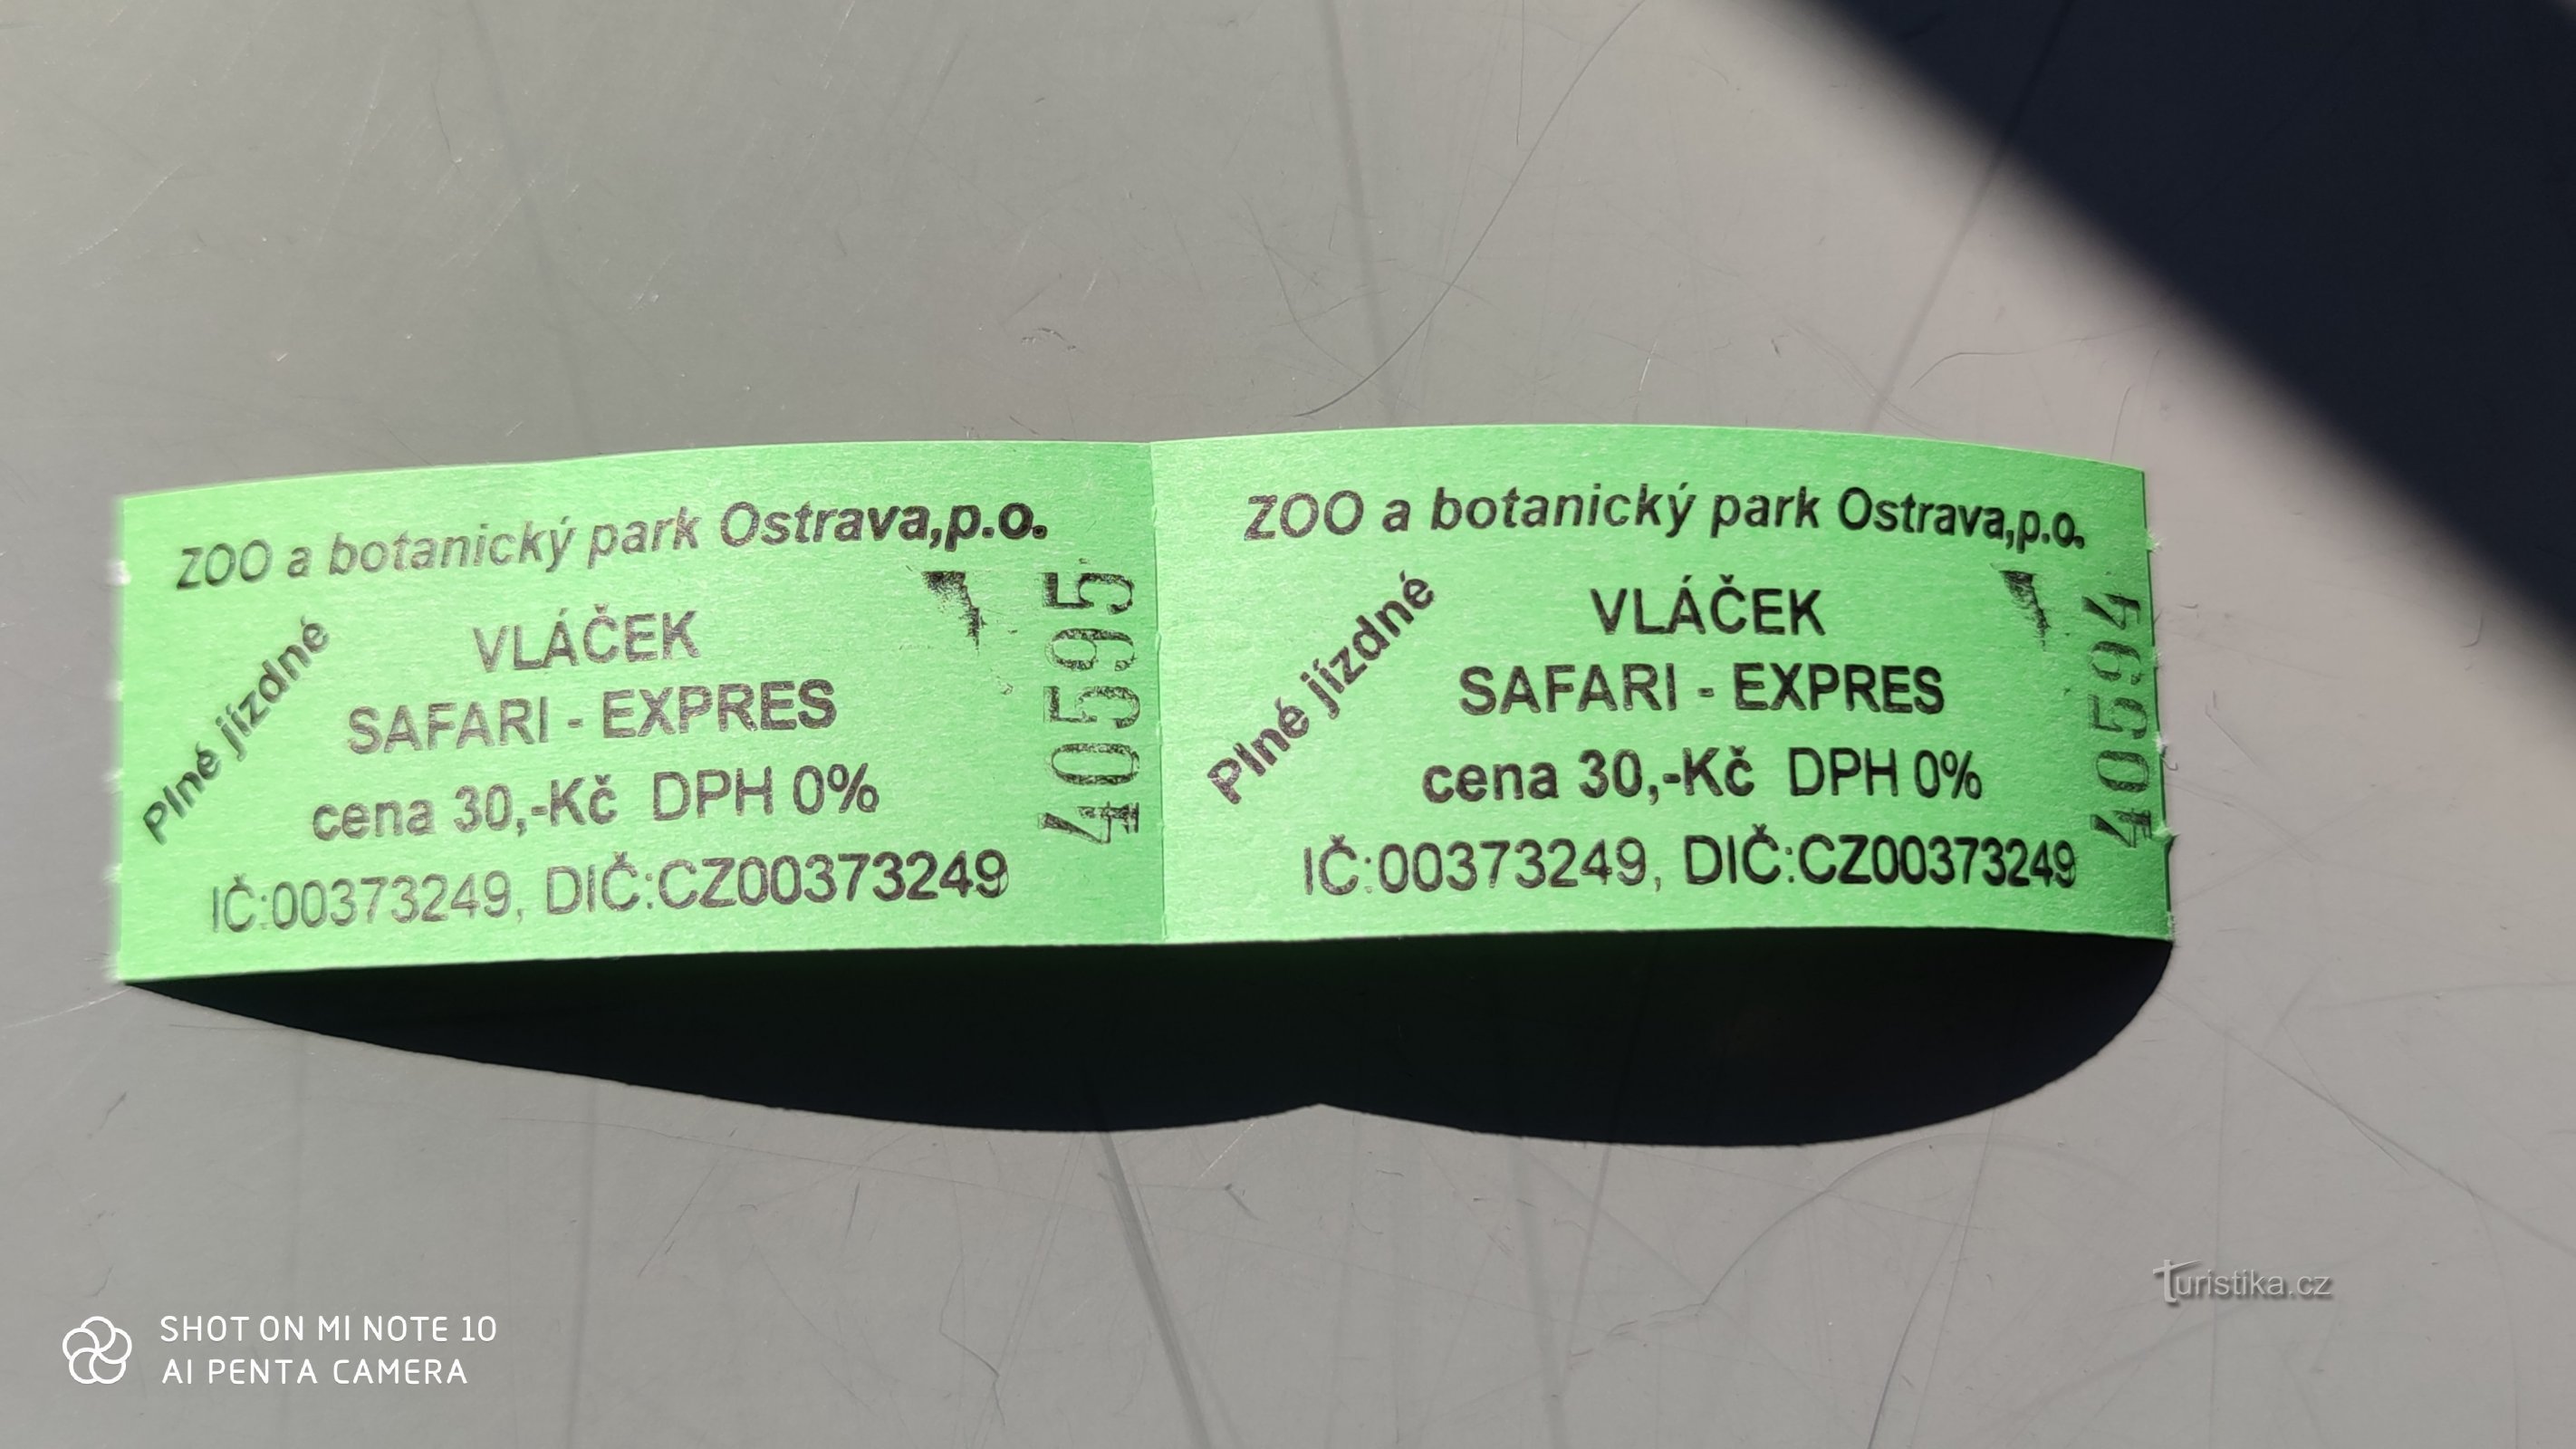 Safari express v živalskem vrtu Ostrava